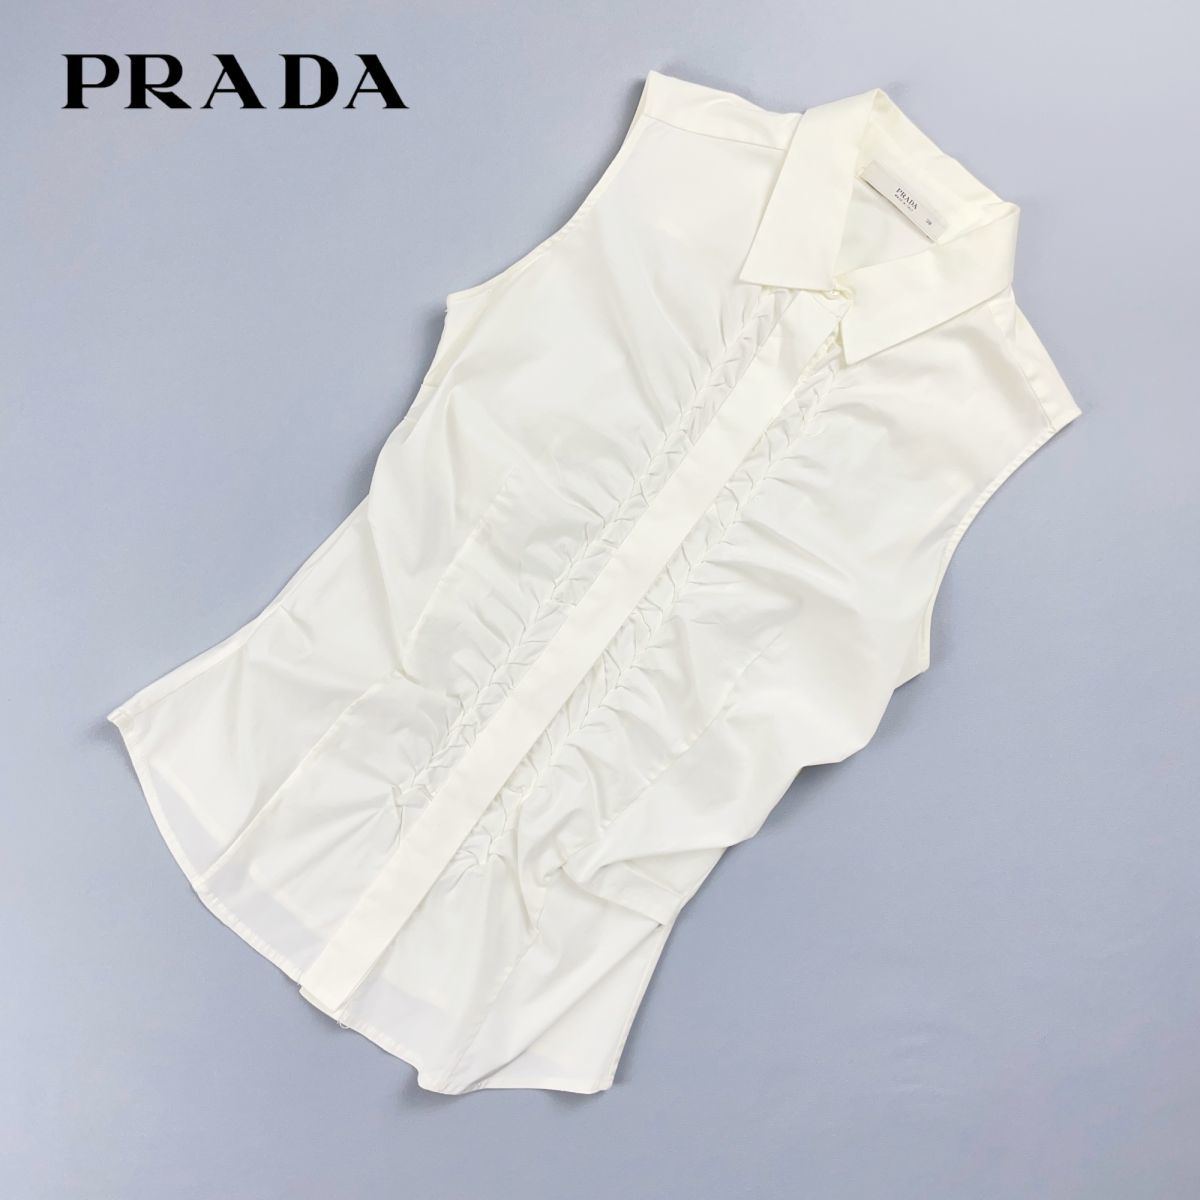 美品 PRADA プラダ イタリア製 フロントタック 襟付きノースリーブブラウスシャツ トップス レディース 白 ホワイト サイズ38*FC107